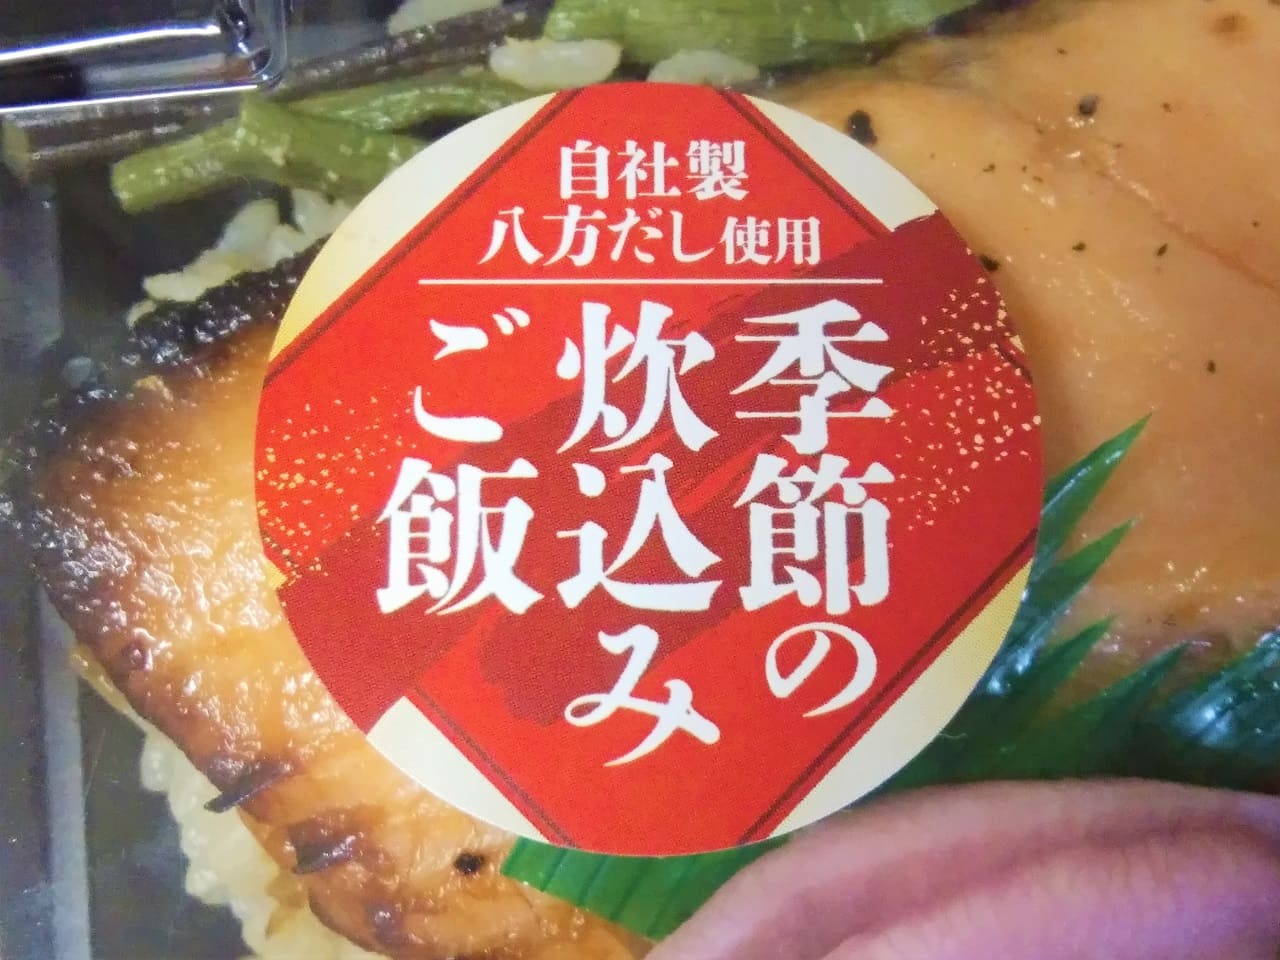 銀鮭西京味噌焼弁当のパッケージ